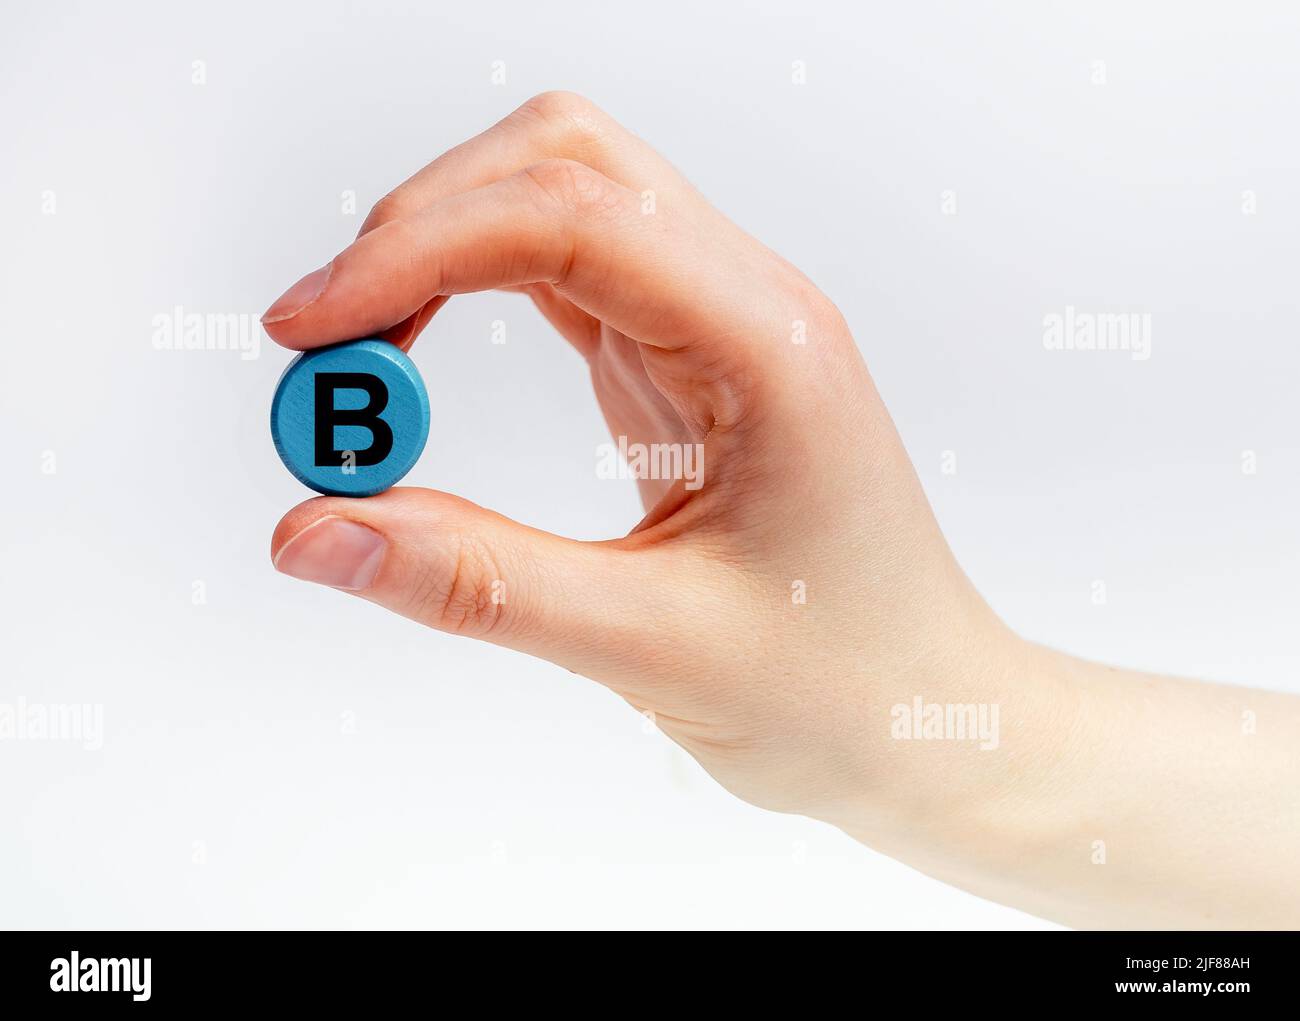 B Vitamintablette, Nahrungsergänzungsmittel in der Hand Nahaufnahme. Hochwertige Fotos Stockfoto